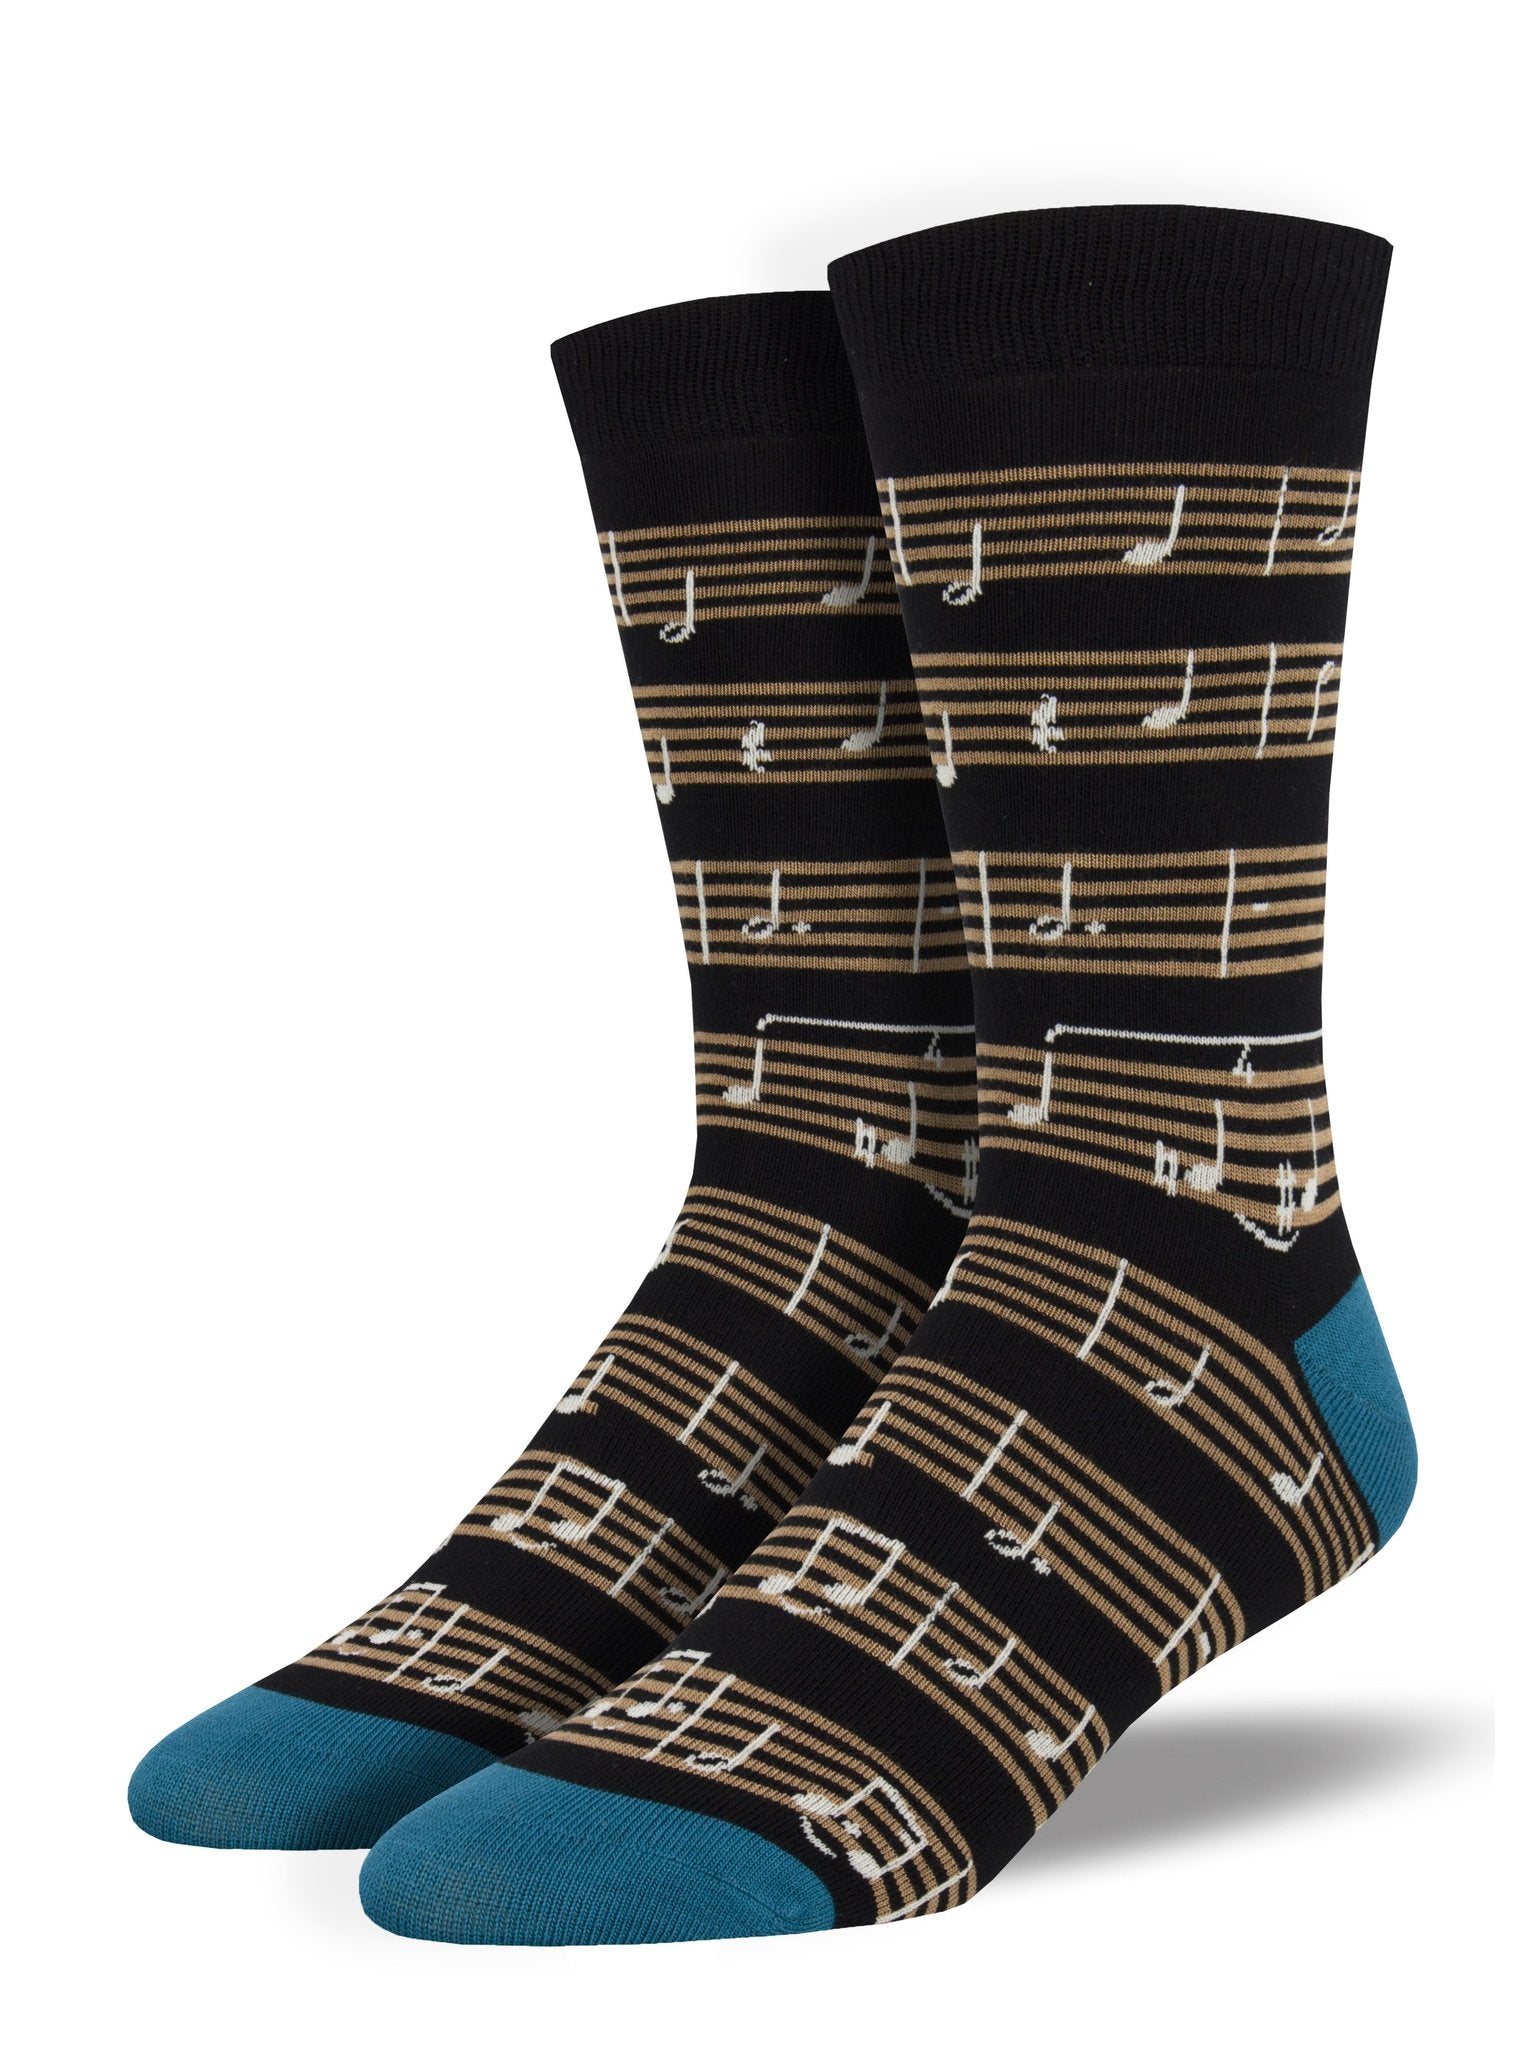 Sheet Music Men's Socks